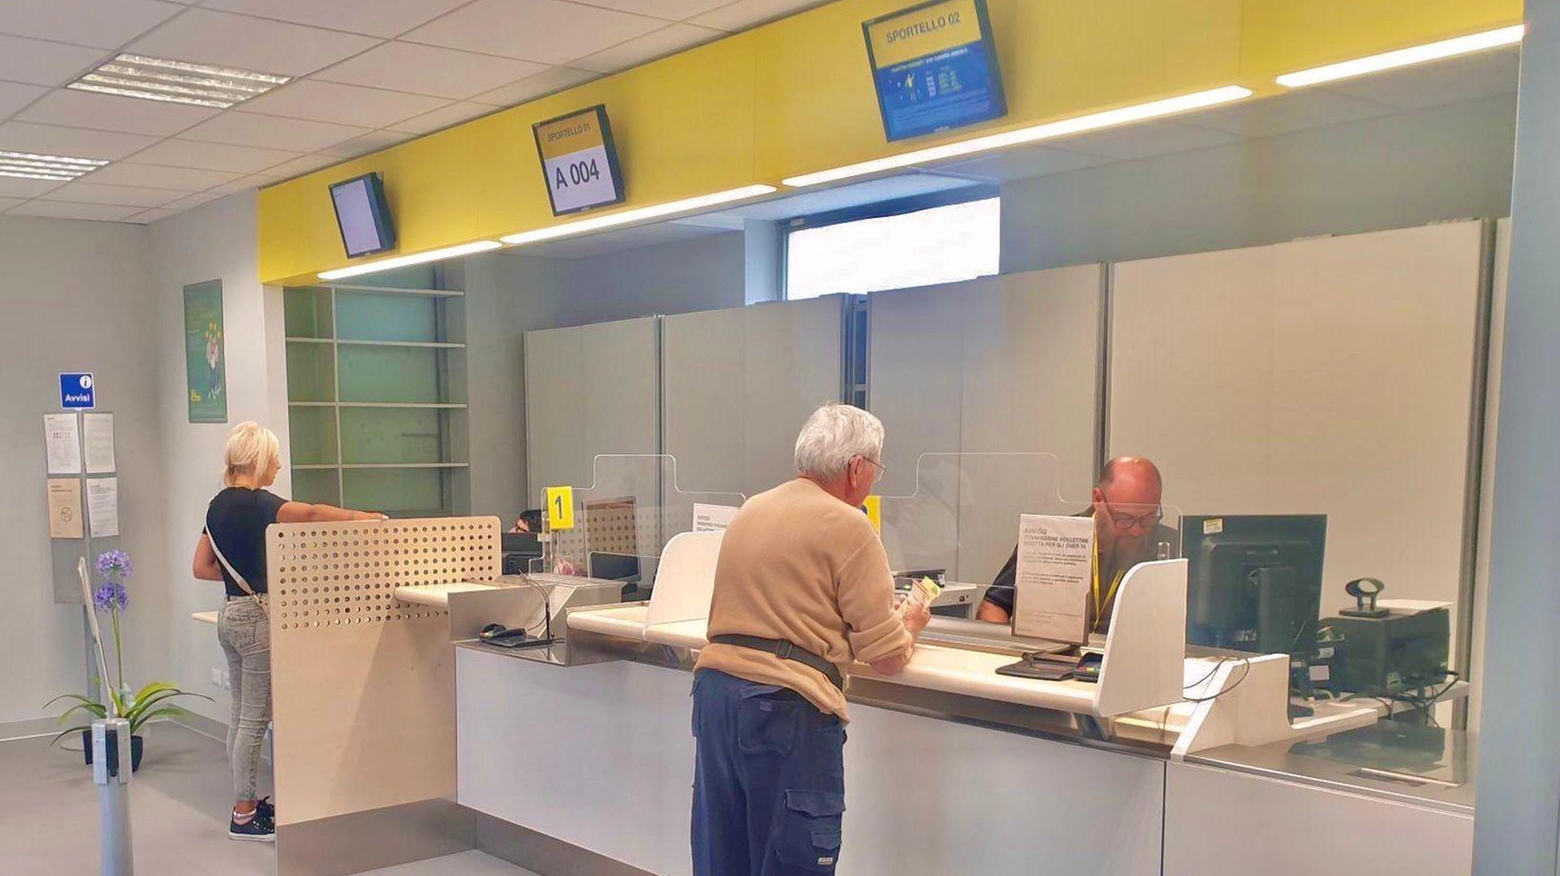 L'ufficio postale di Montecatini Valdicecina sarà oggetto di lavori infrastrutturali per migliorare i servizi offerti alla cittadinanza, grazie al Progetto Polis. La trasformazione degli spazi favorirà la digitalizzazione e la competitività economica locale.